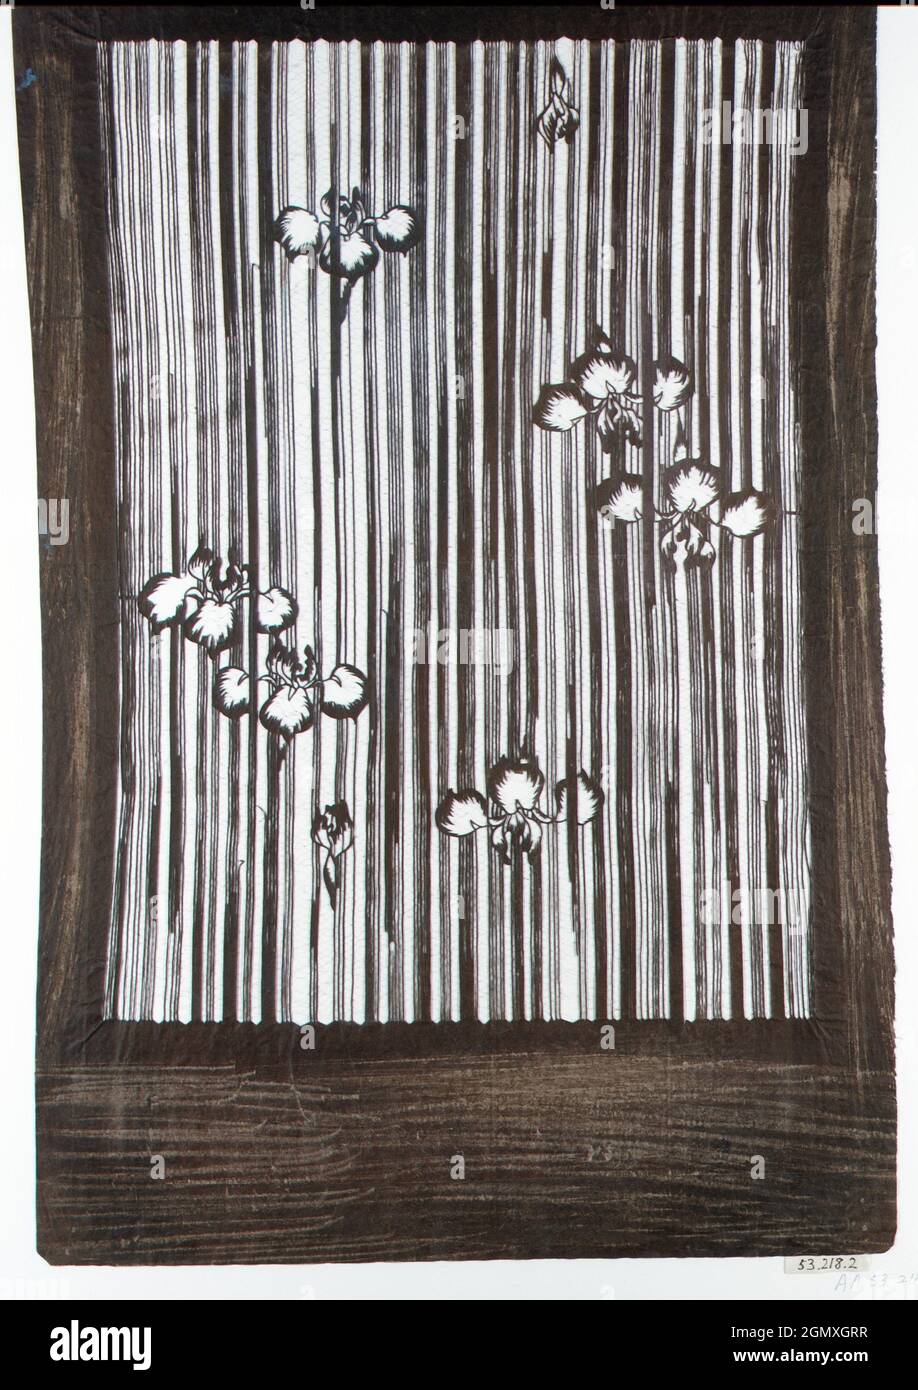 Plantilla con Diseño de Irises. Período: Período Edo (1615-1868); Fecha: Principios del siglo 19th; Cultura: Japón; Medio: Papel doble de morera con seda Foto de stock